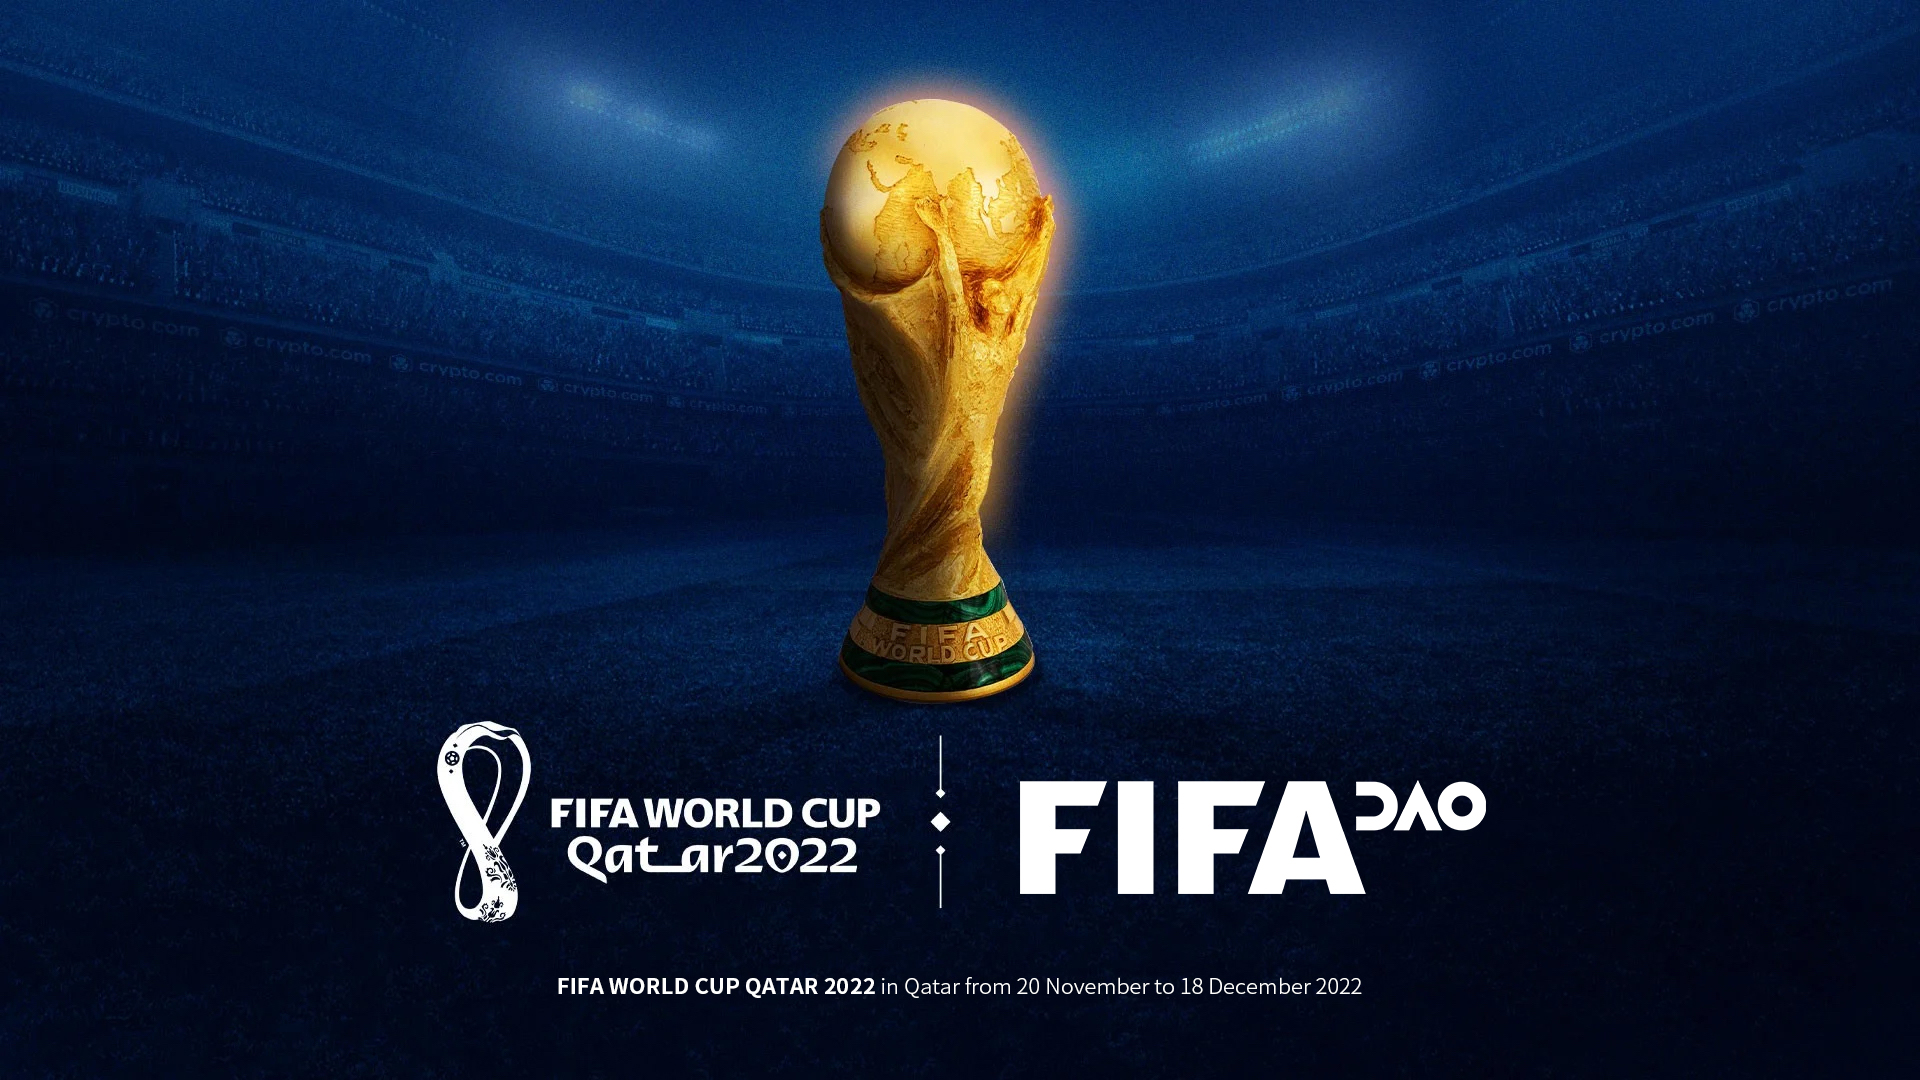 卡塔尔预计世界杯收入可达170亿美元